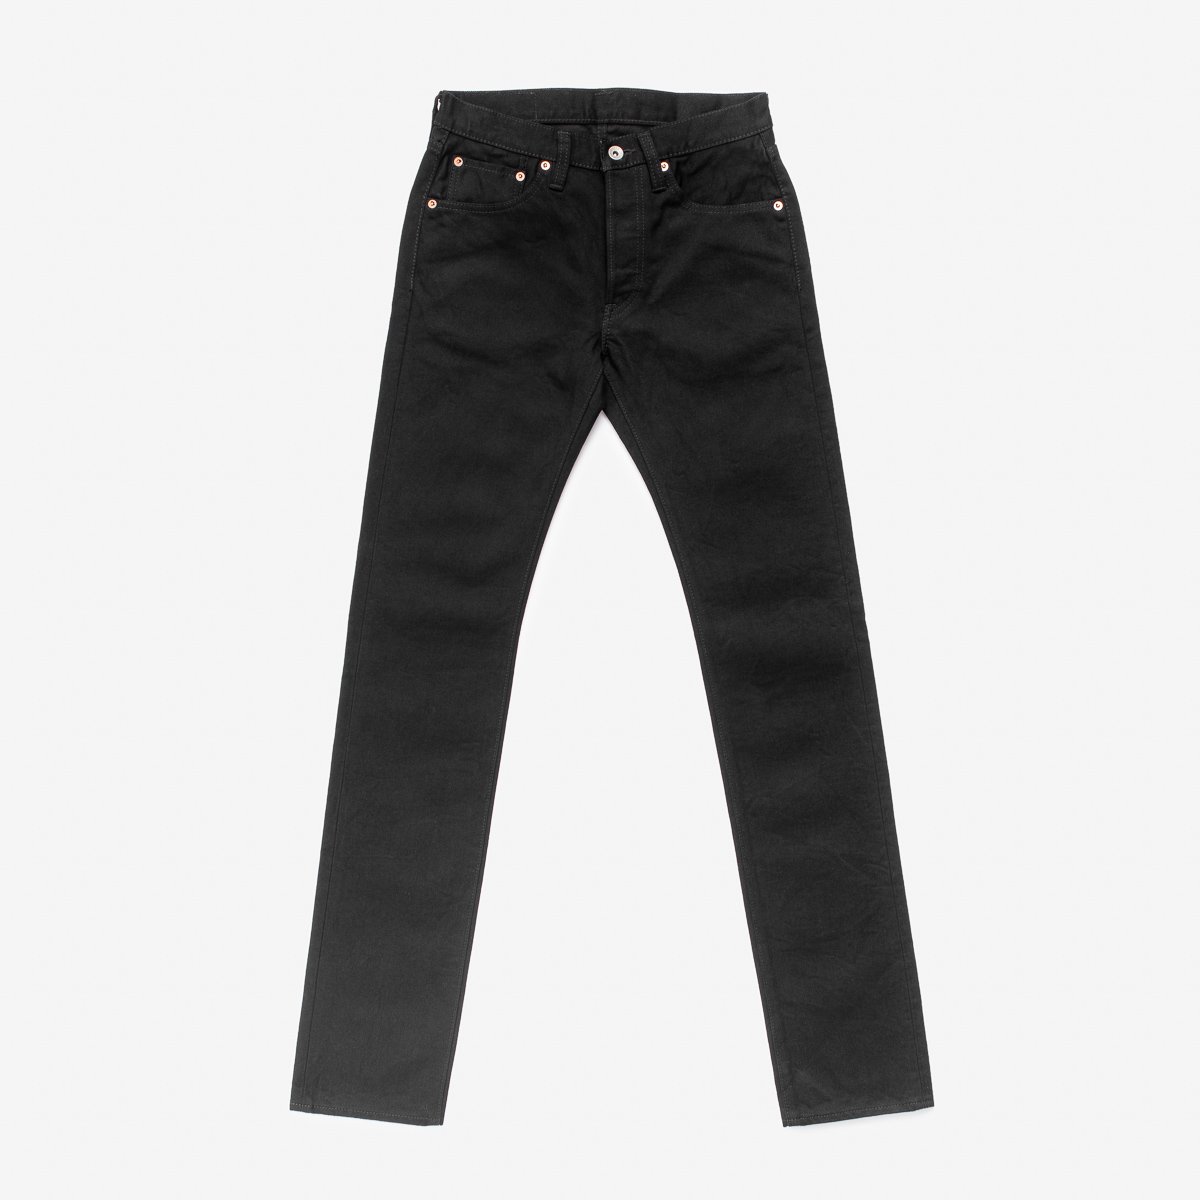 14oz Selvedge Denim Slim Tapered Jeans - Black/Black